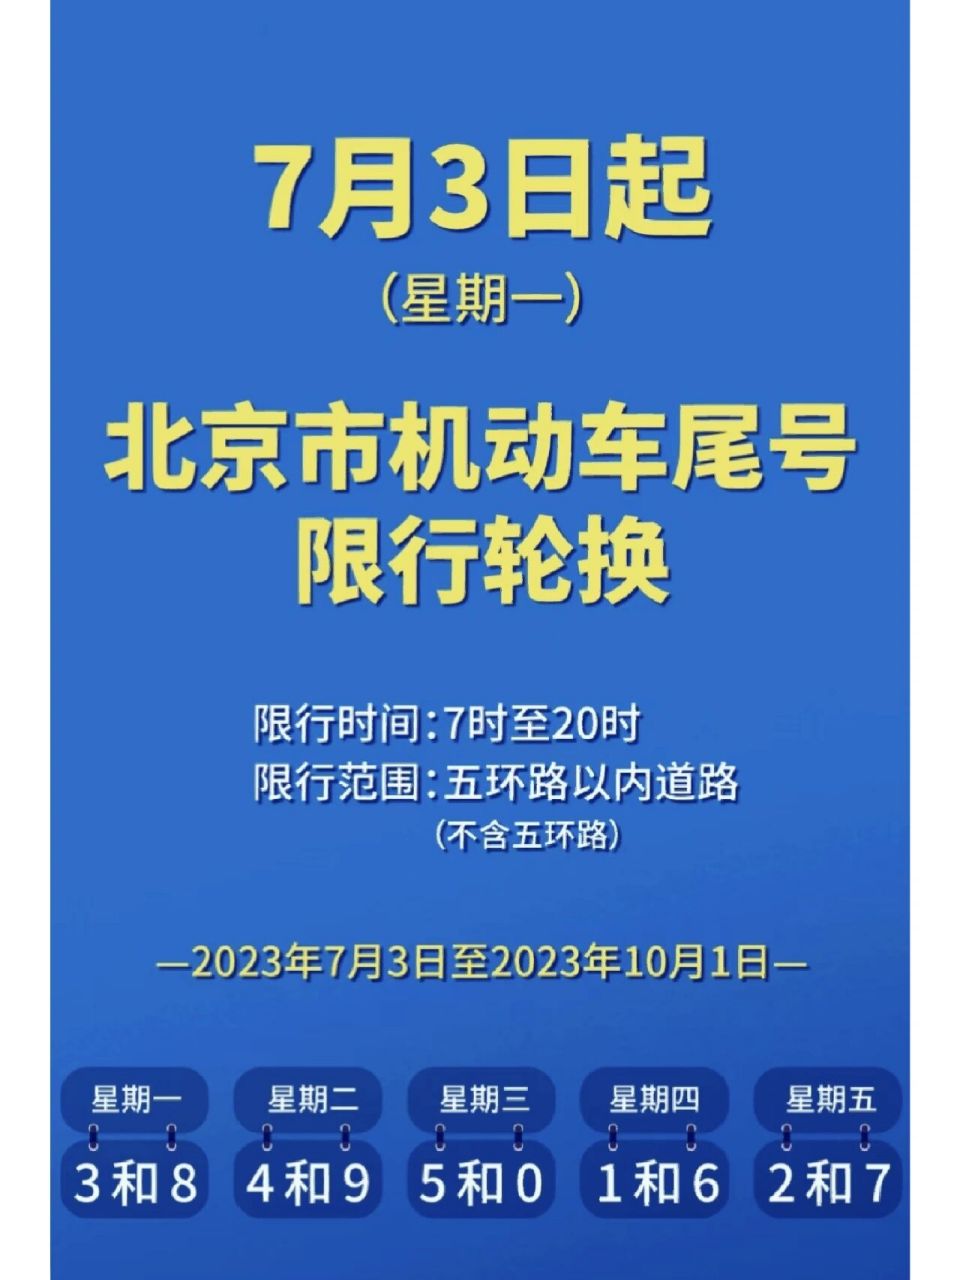 从7月3日起,北京市机动车尾号限行轮换